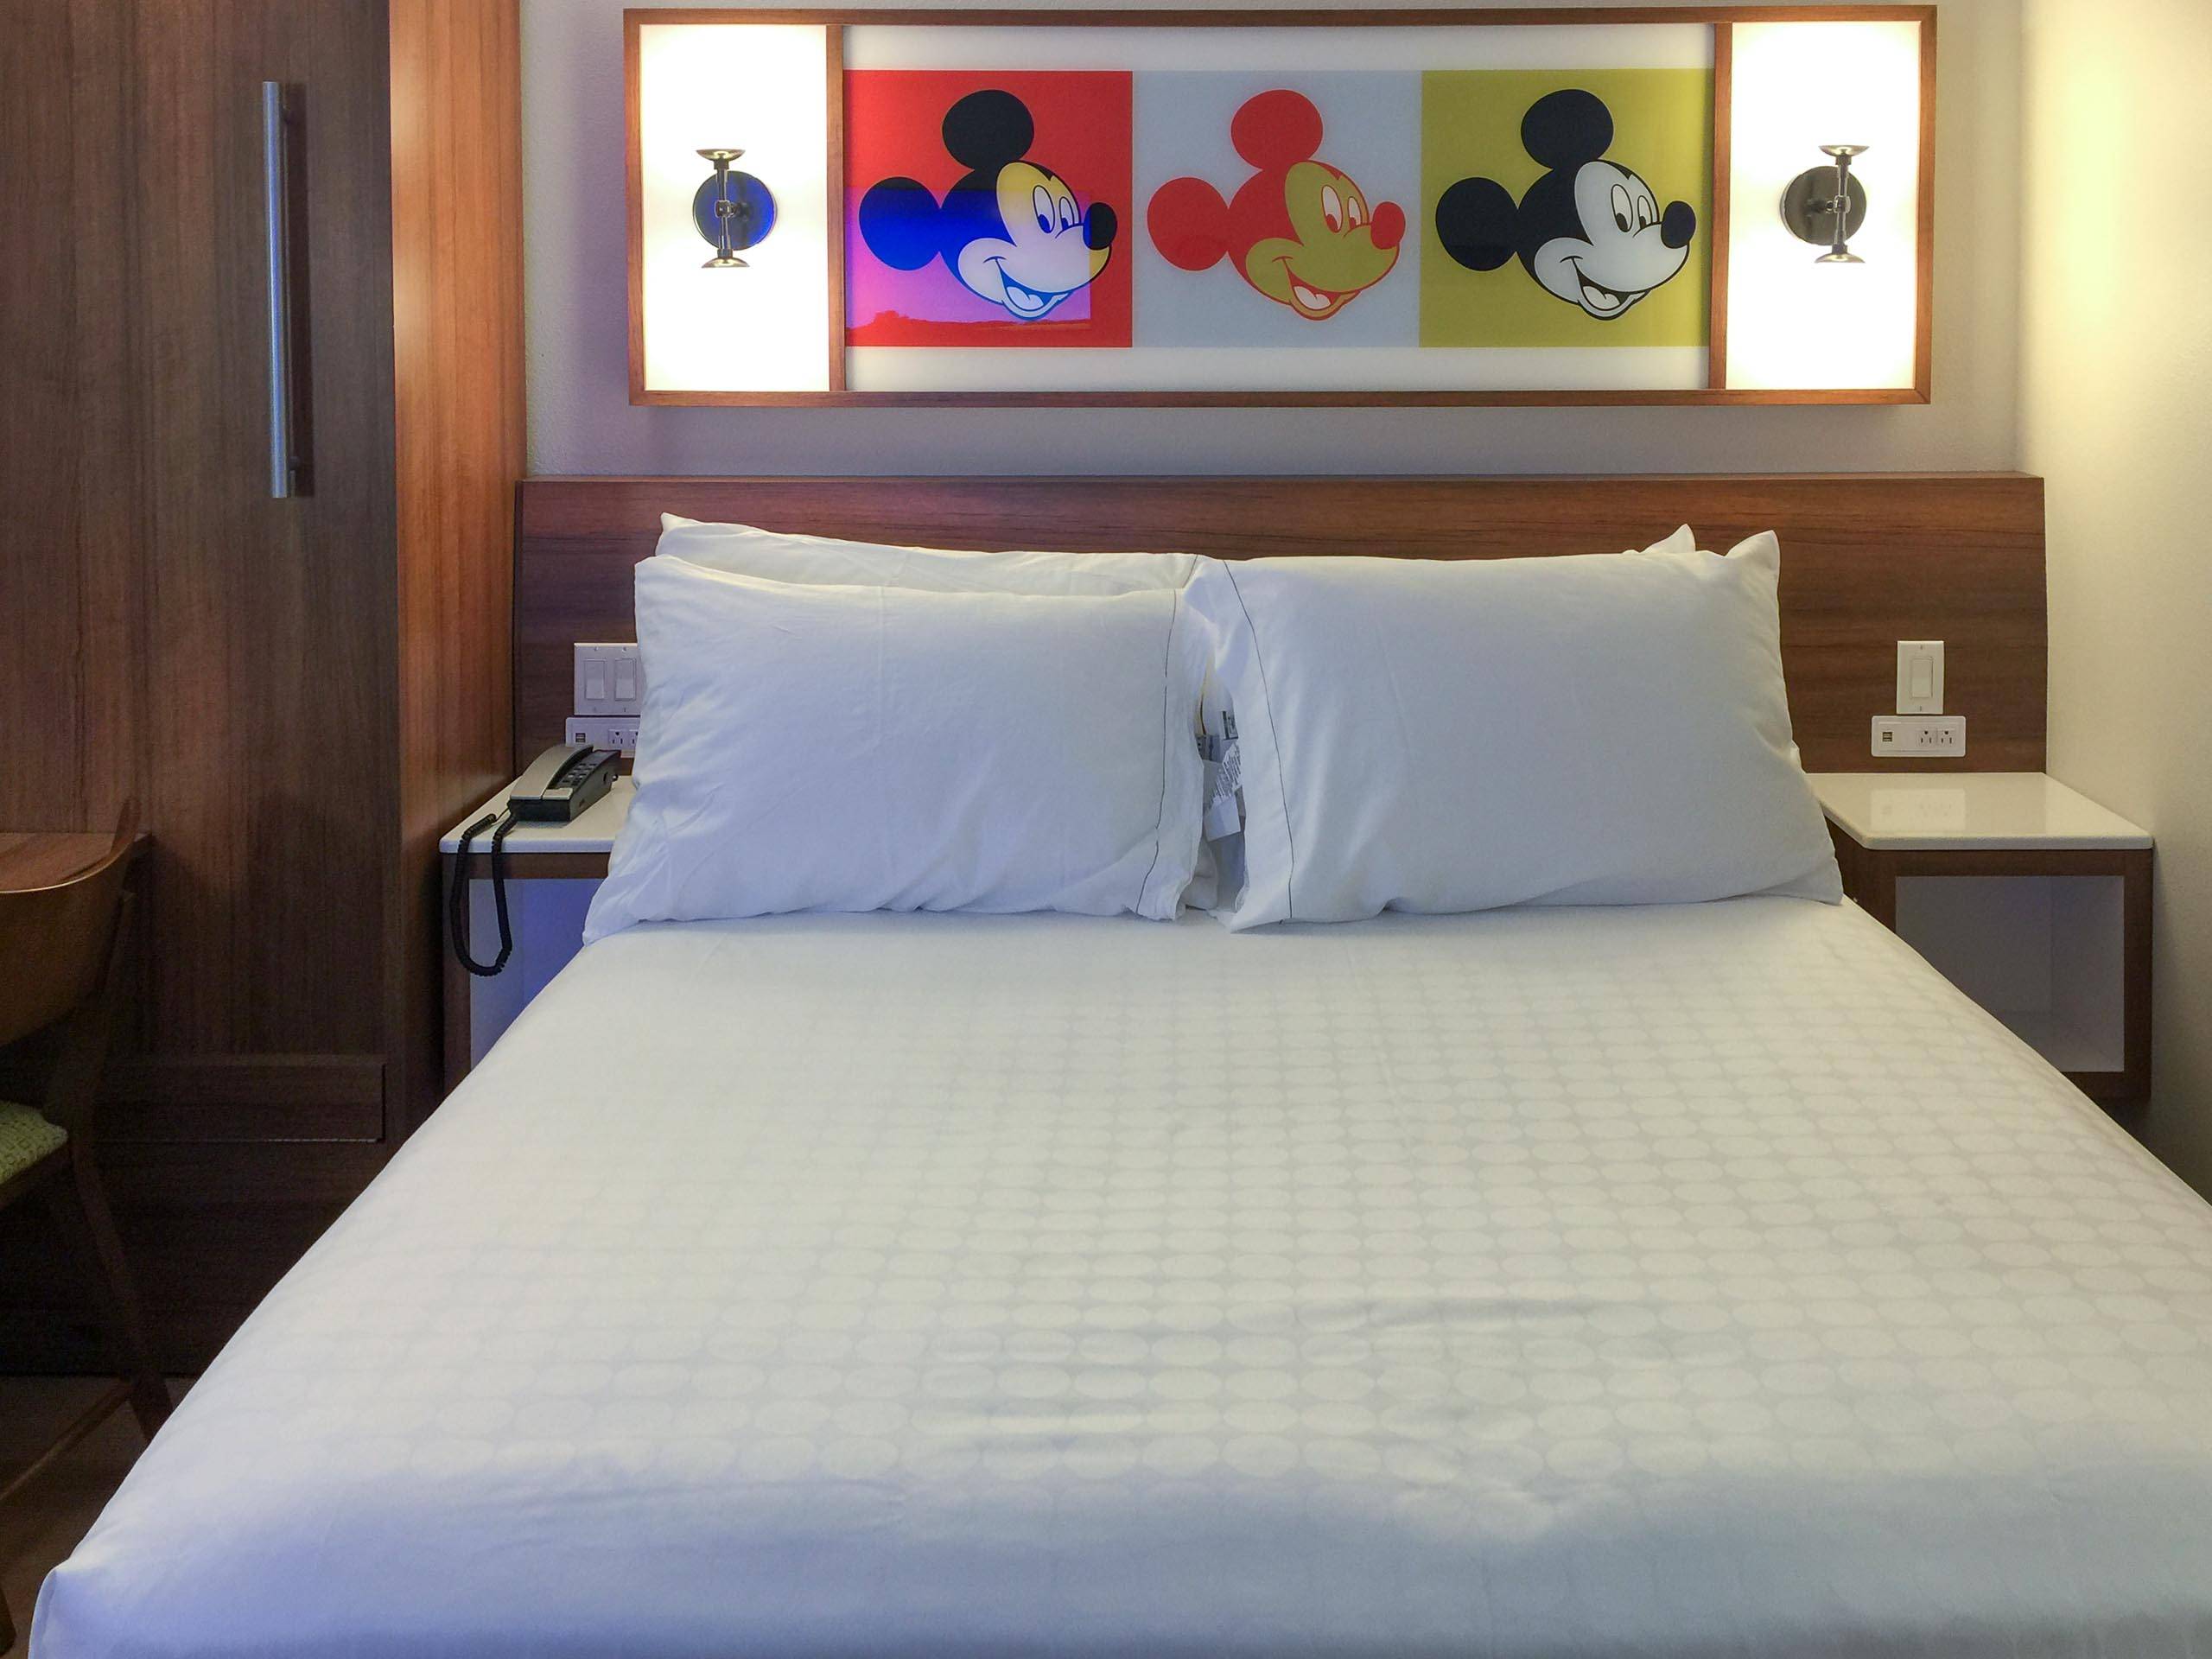 PHOTOS - New look guest rooms at Disney's Pop Century Resort